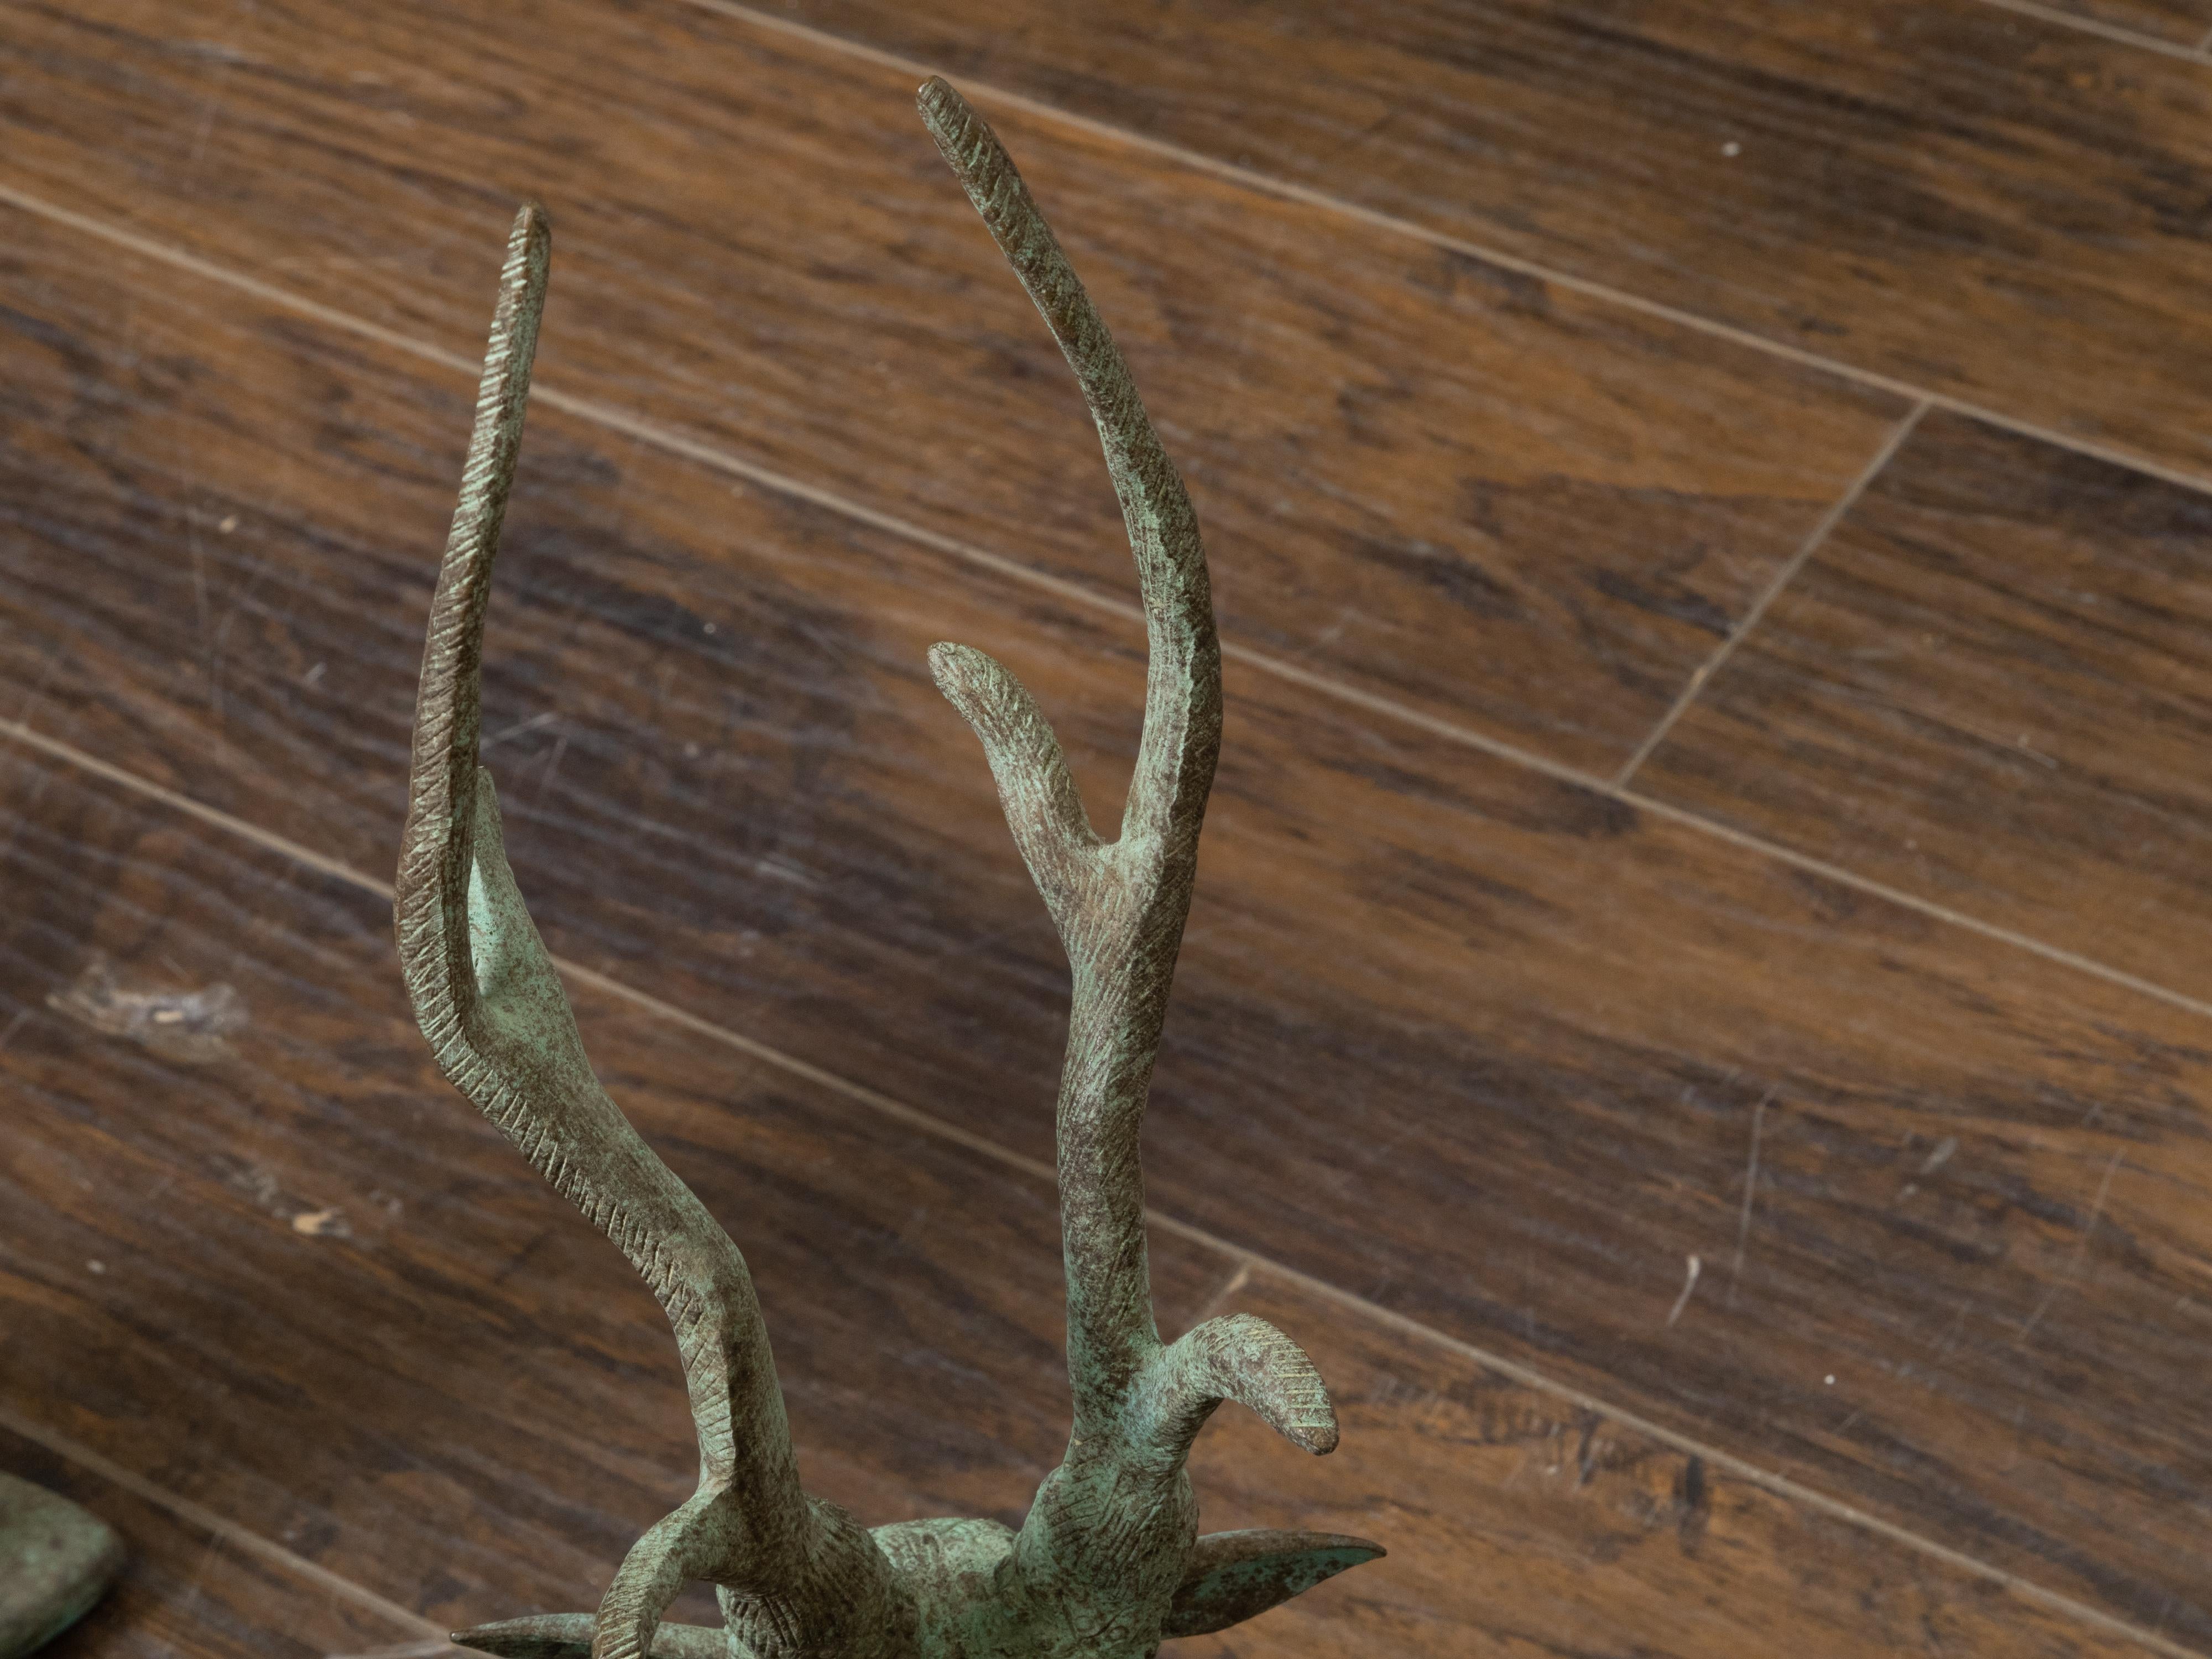 Pair of Vintage Indian Bronze Deer Garden Sculptures with Verdigris Patina In Good Condition For Sale In Atlanta, GA